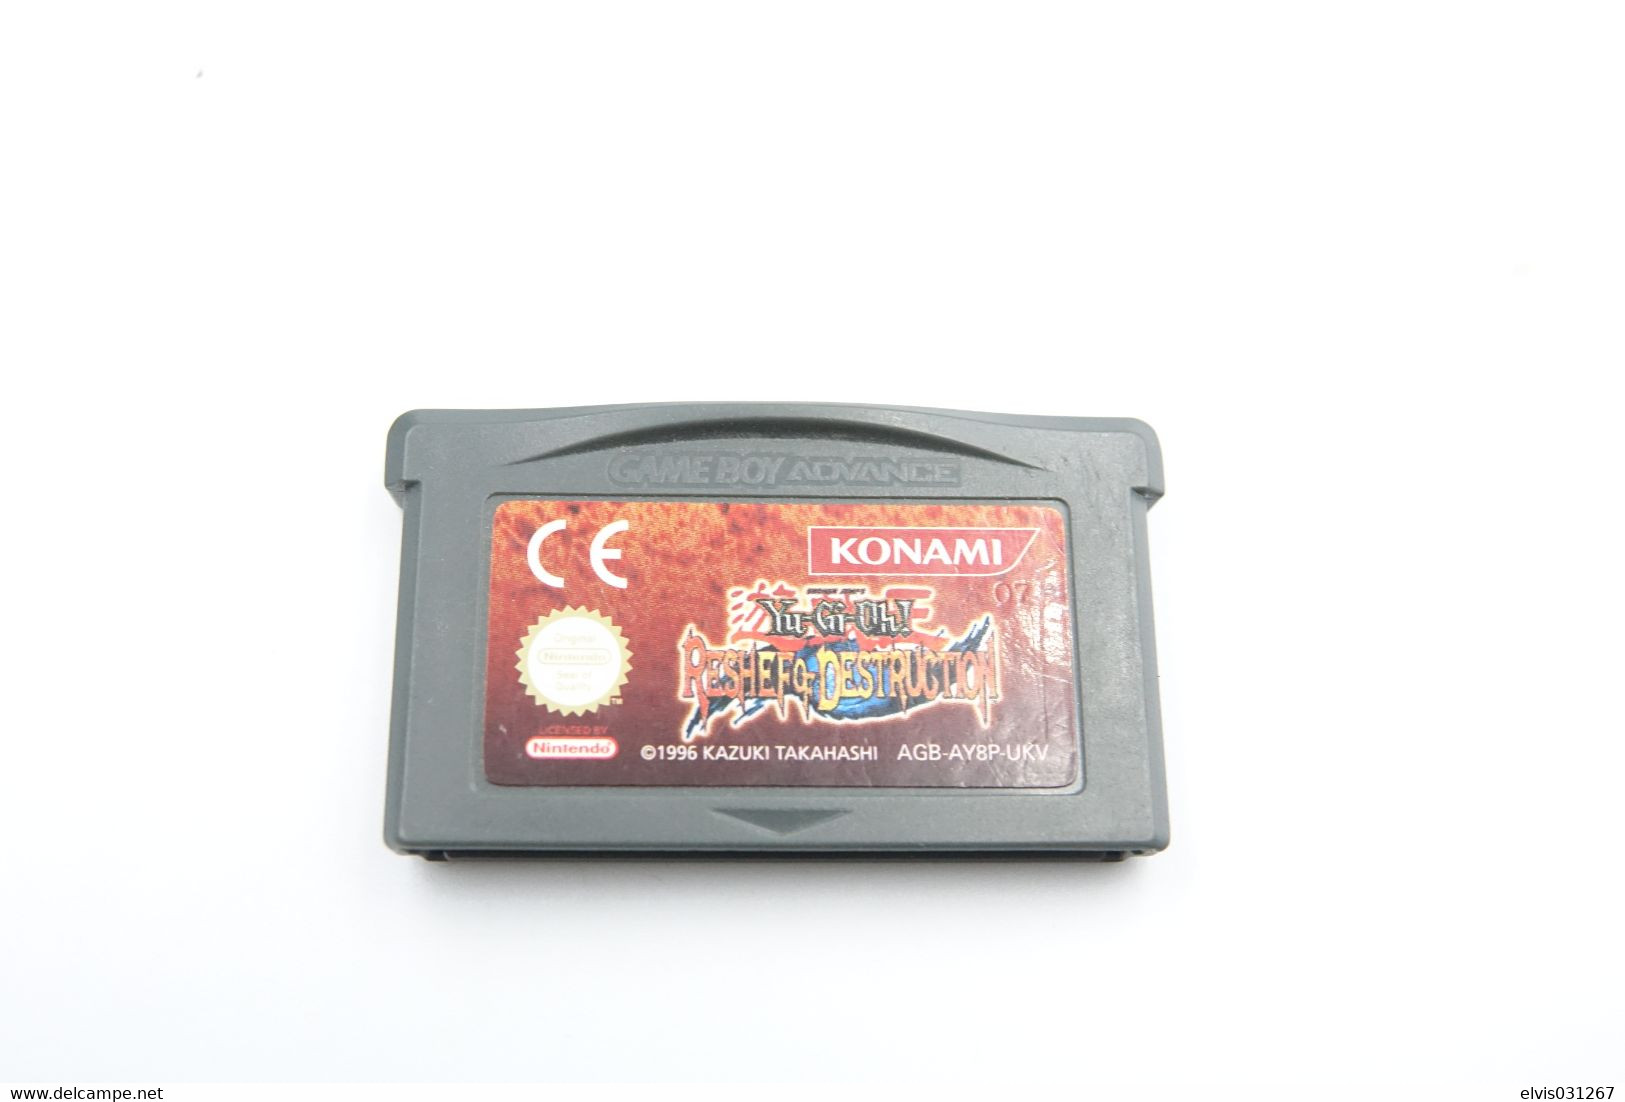 NINTENDO GAMEBOY ADVANCE: YU-GI-OH RESHEF OF DESTRUCTION - KONAMI - 1996 - Game Boy Advance